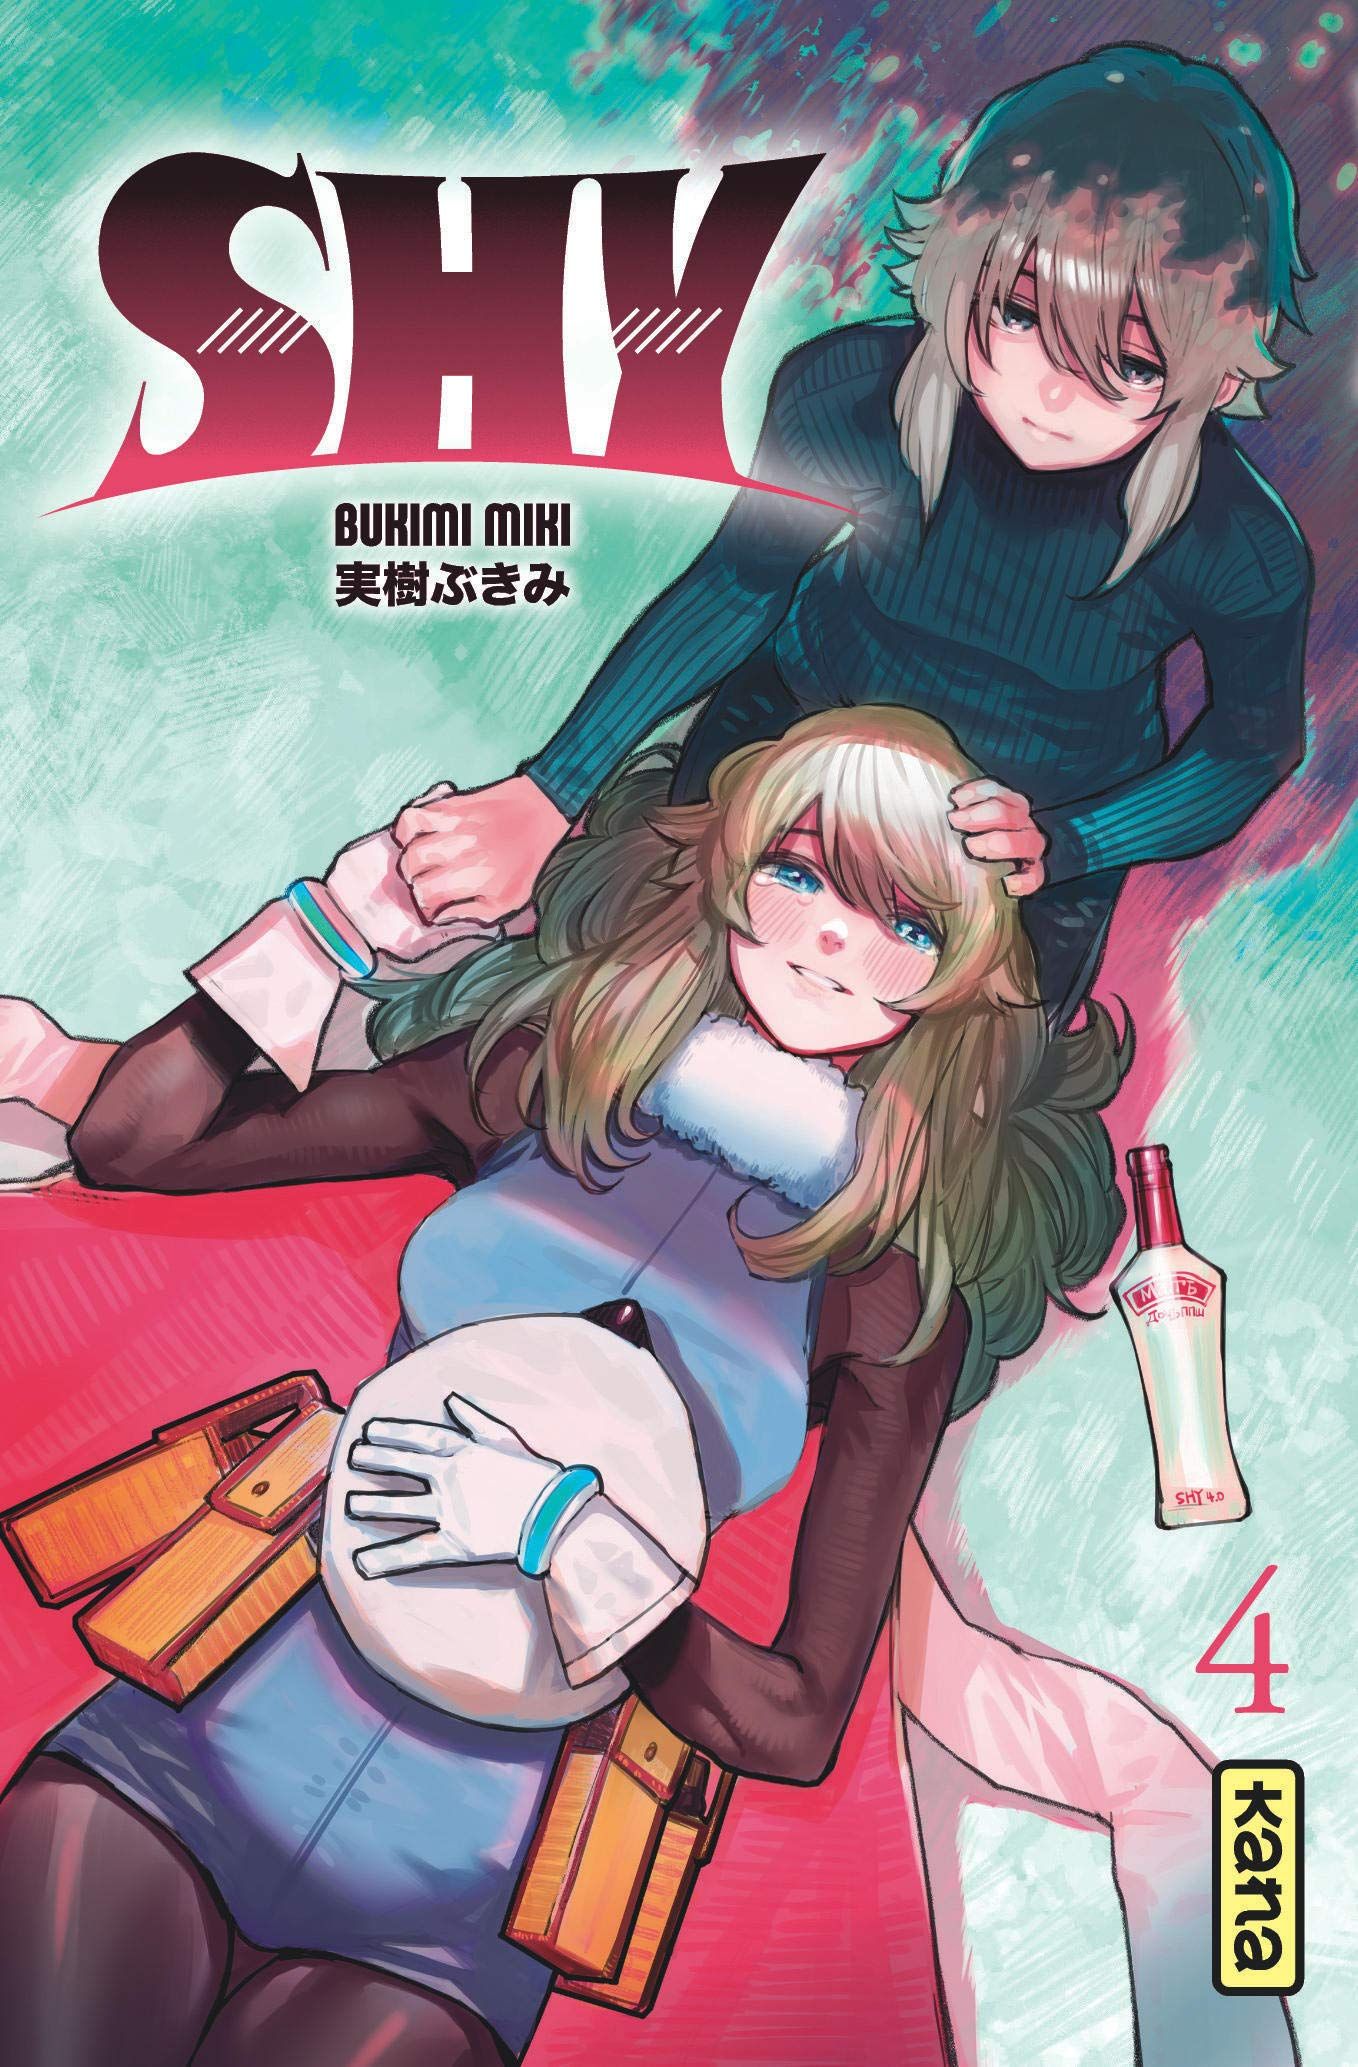 Sortie Manga au Québec JUILLET 2021 Shy-4-kana